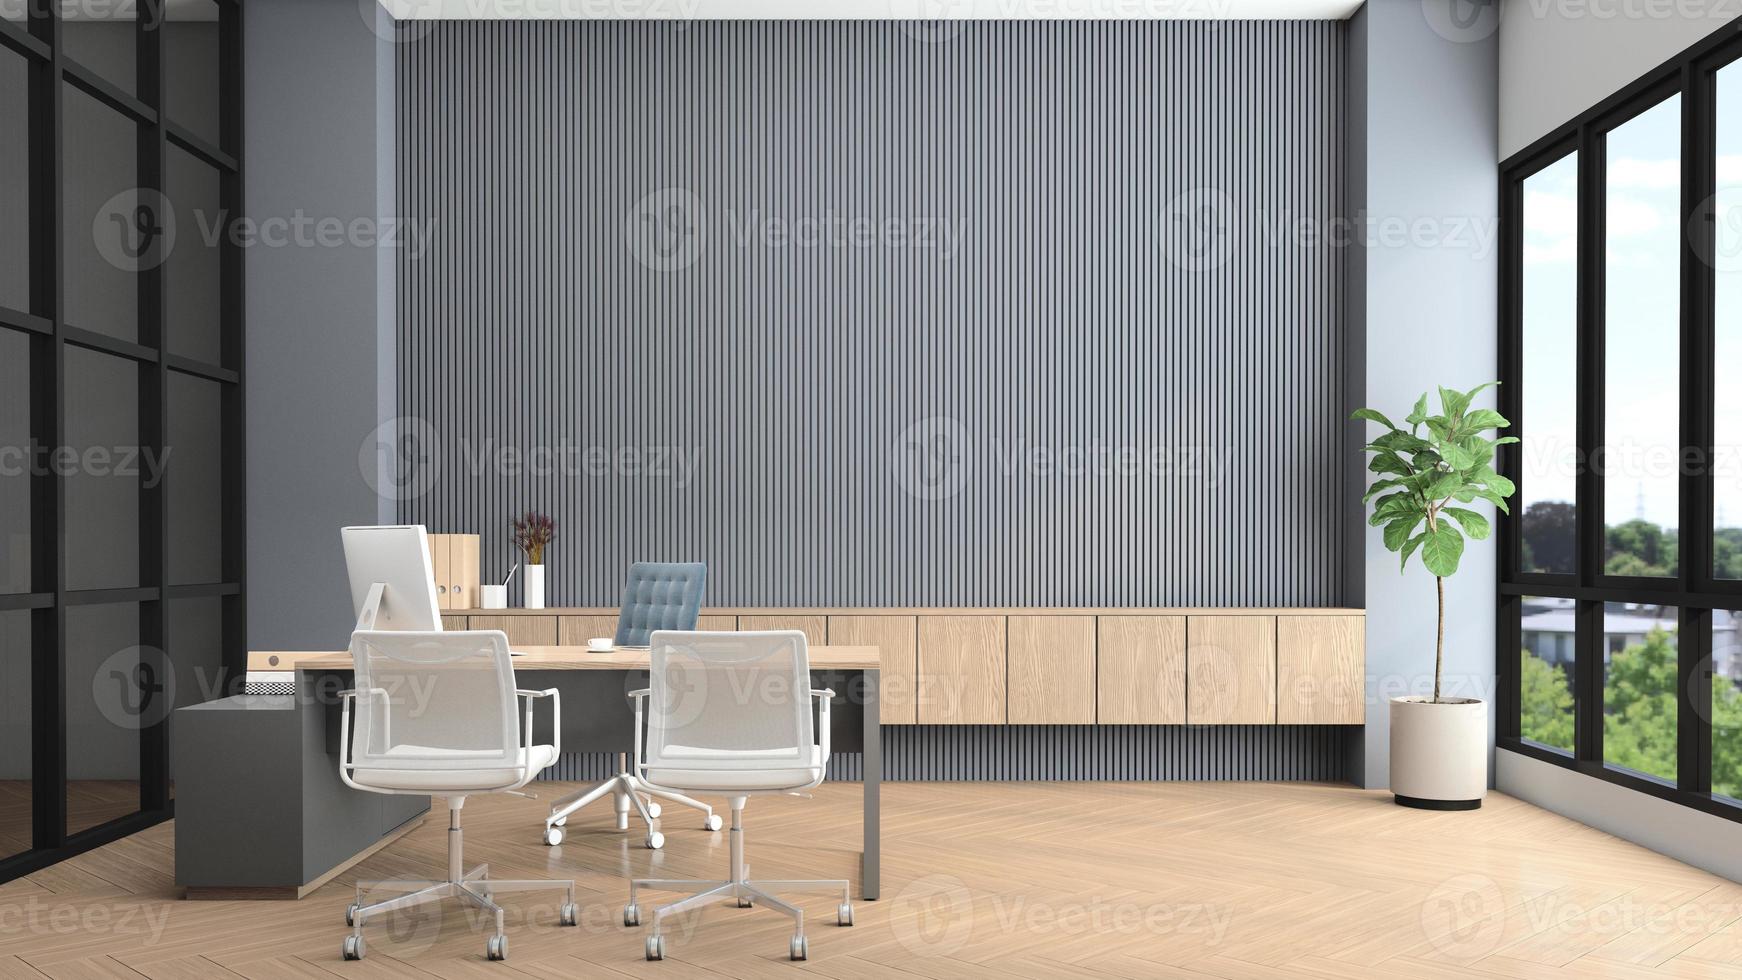 modernt chefsrum med skrivbord och dator, grå lamellvägg och inbyggt träskåp. 3d-rendering foto